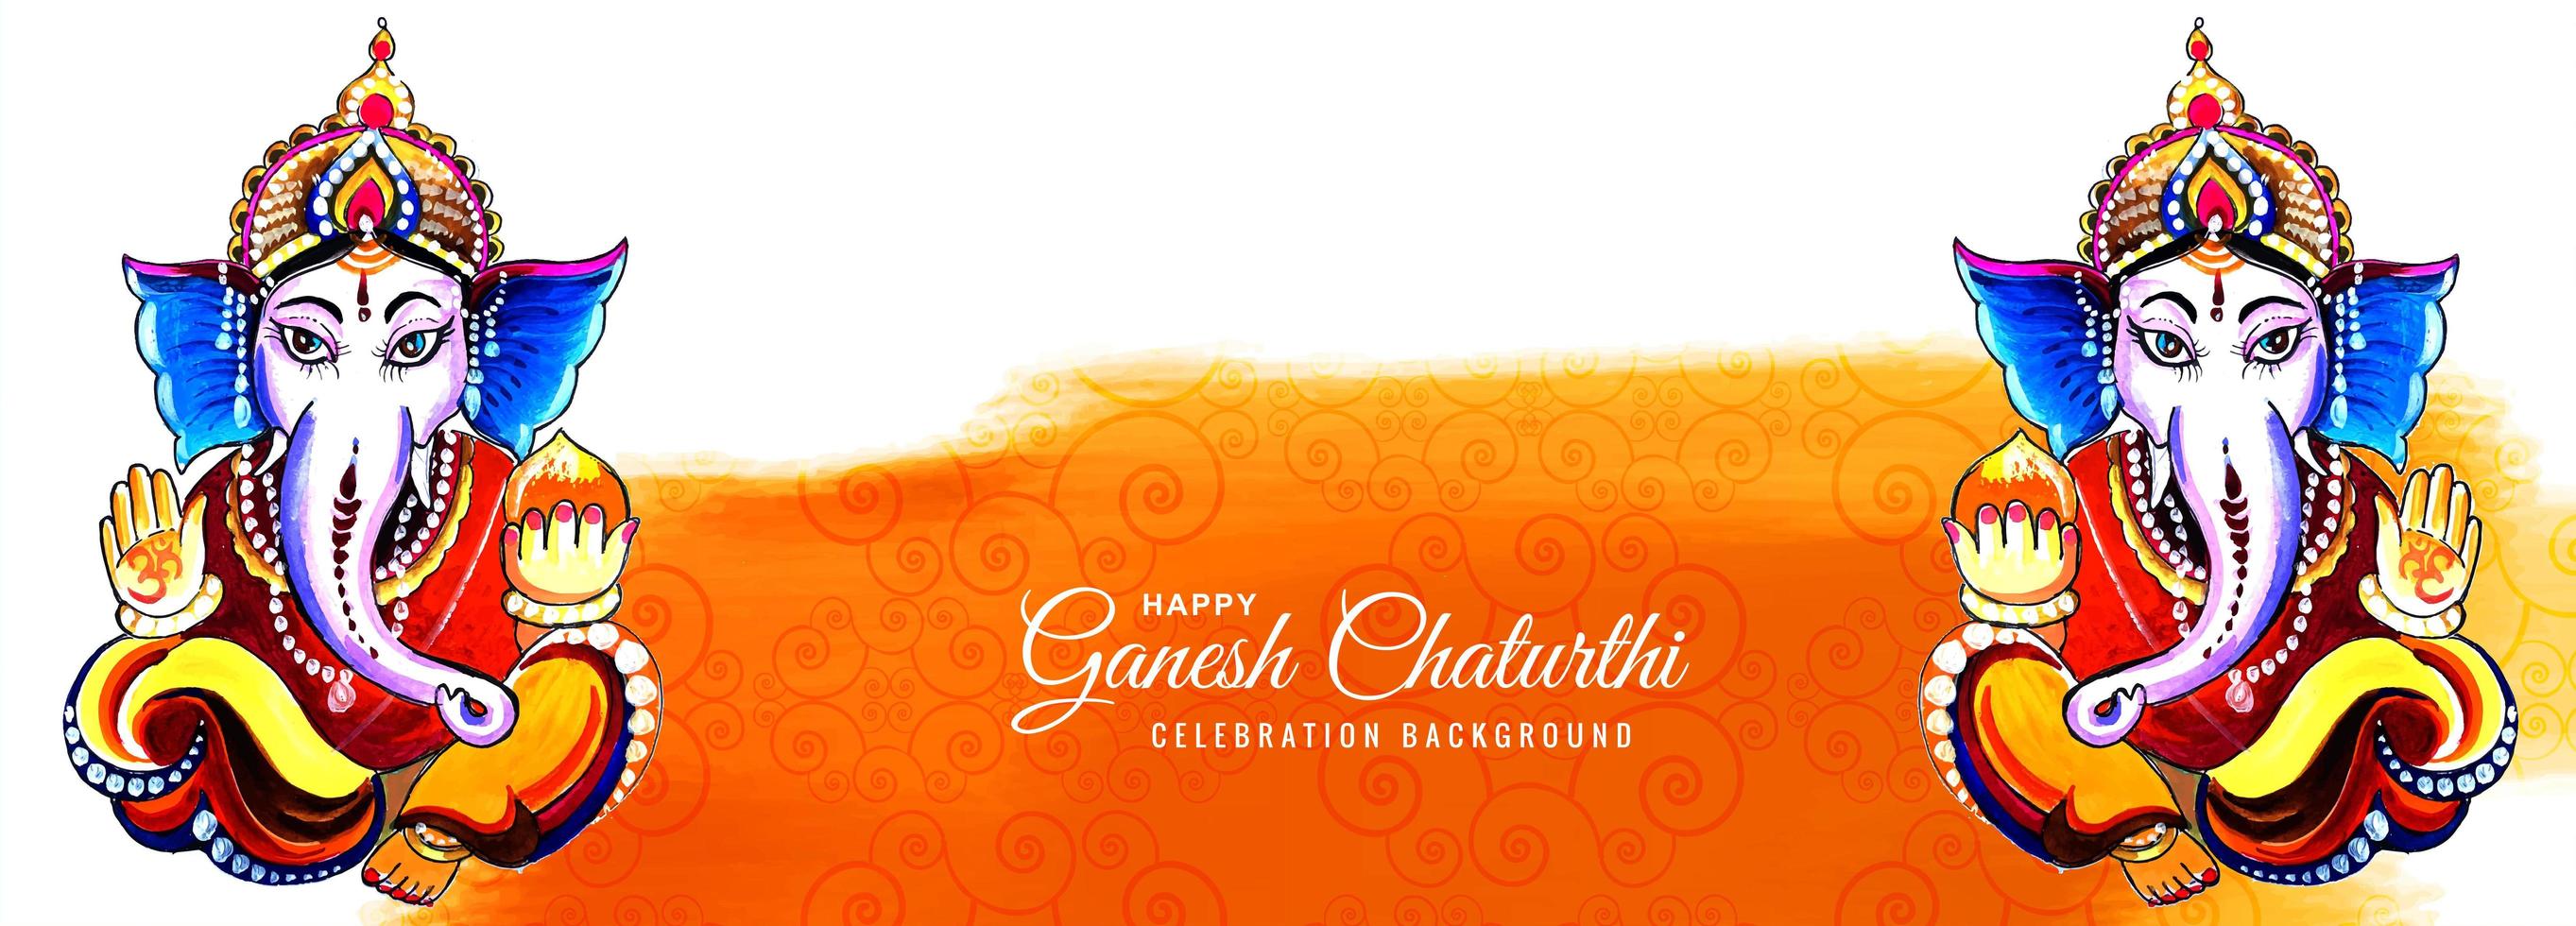 Festival Banner für Happy Ganesh Chaturthi Banner vektor